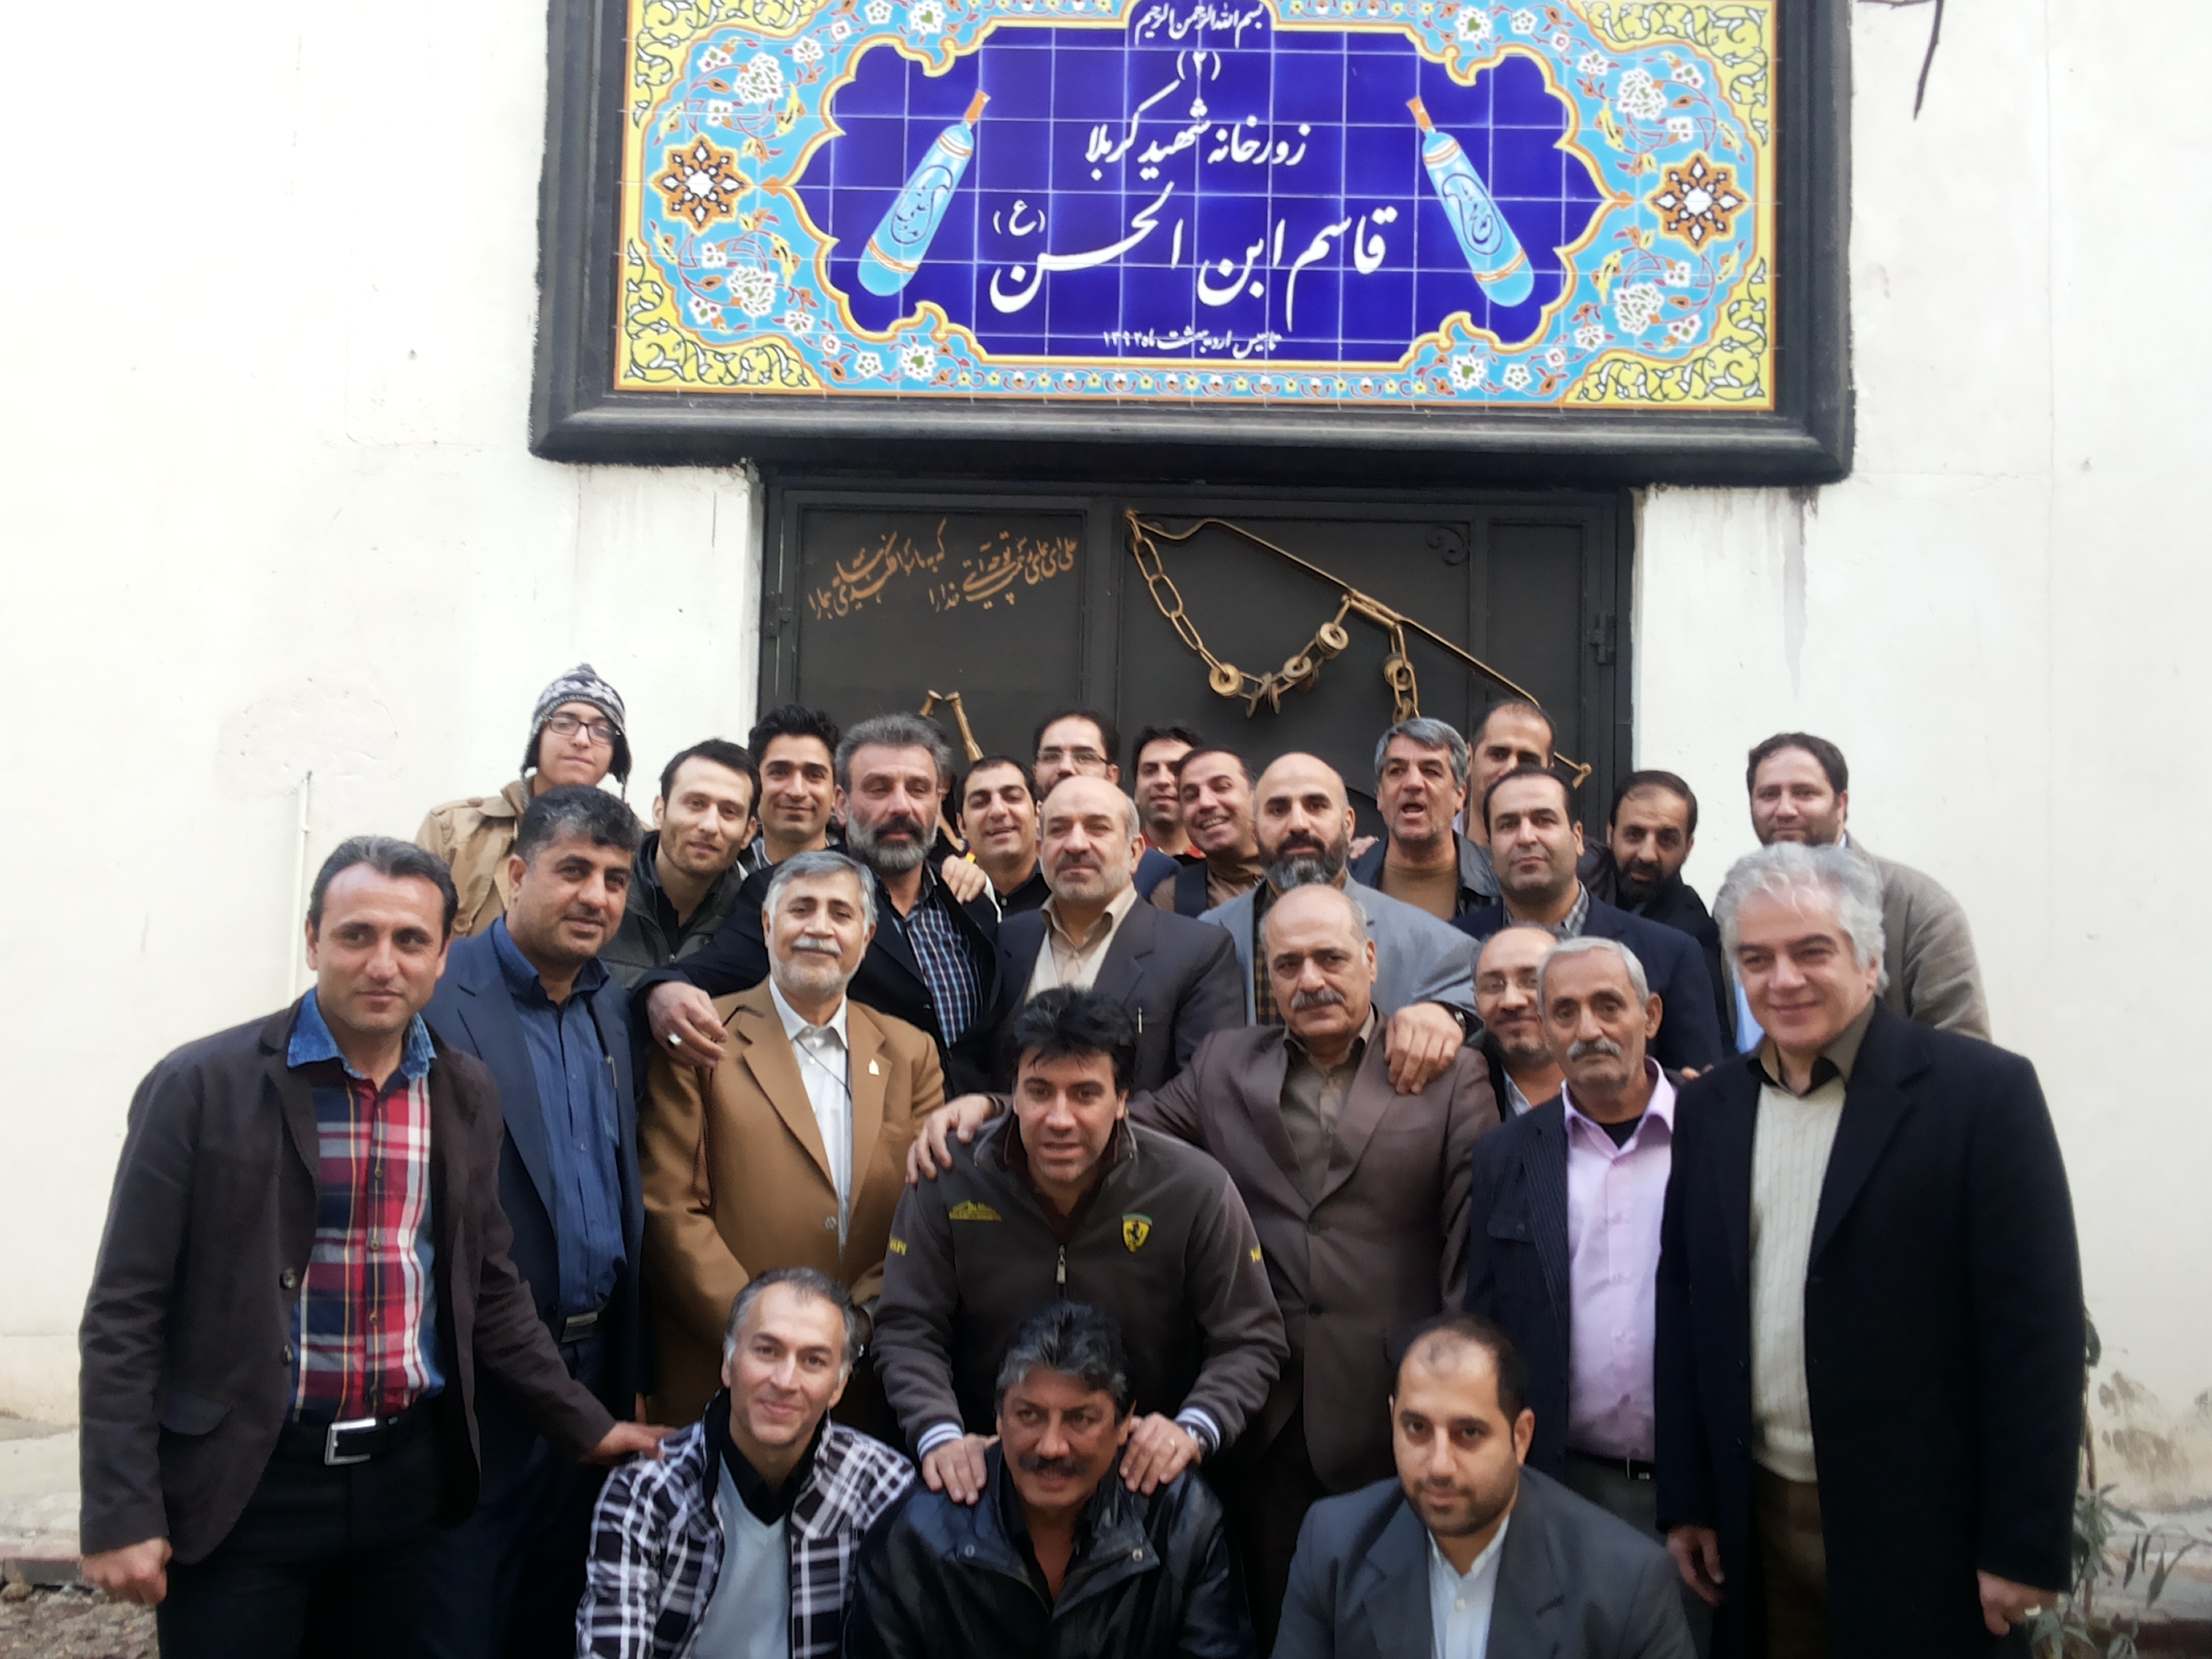 پهلوان غلامی در مراسم افتتاحیه زورخانه ی زندان اوین